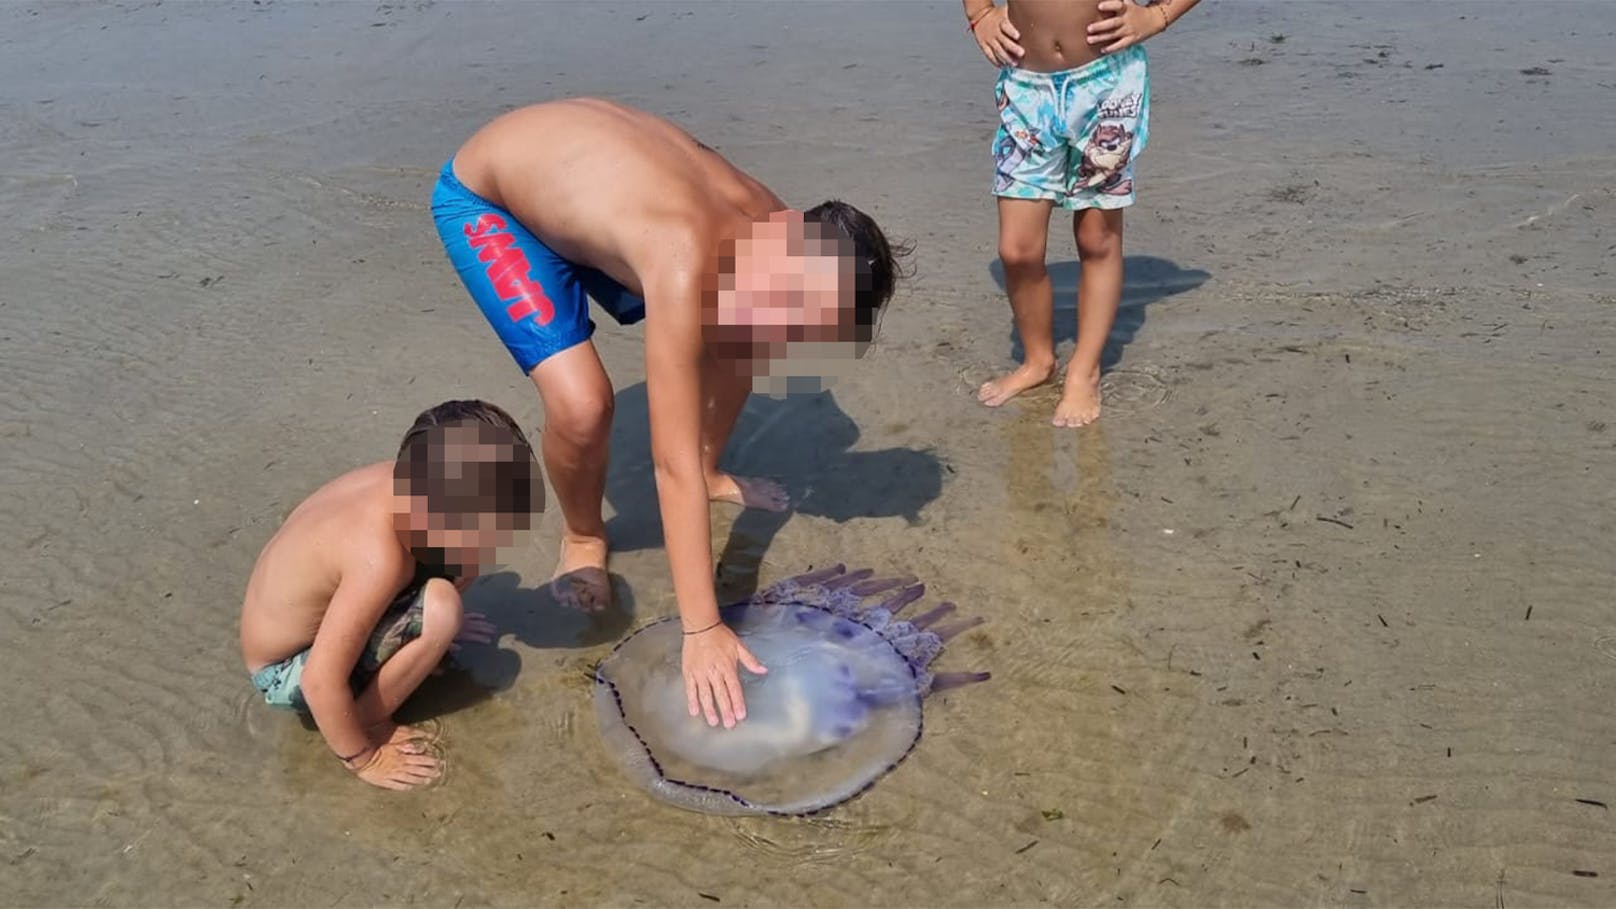 Wiener Familie findet Riesenqualle am Strand in Lignano